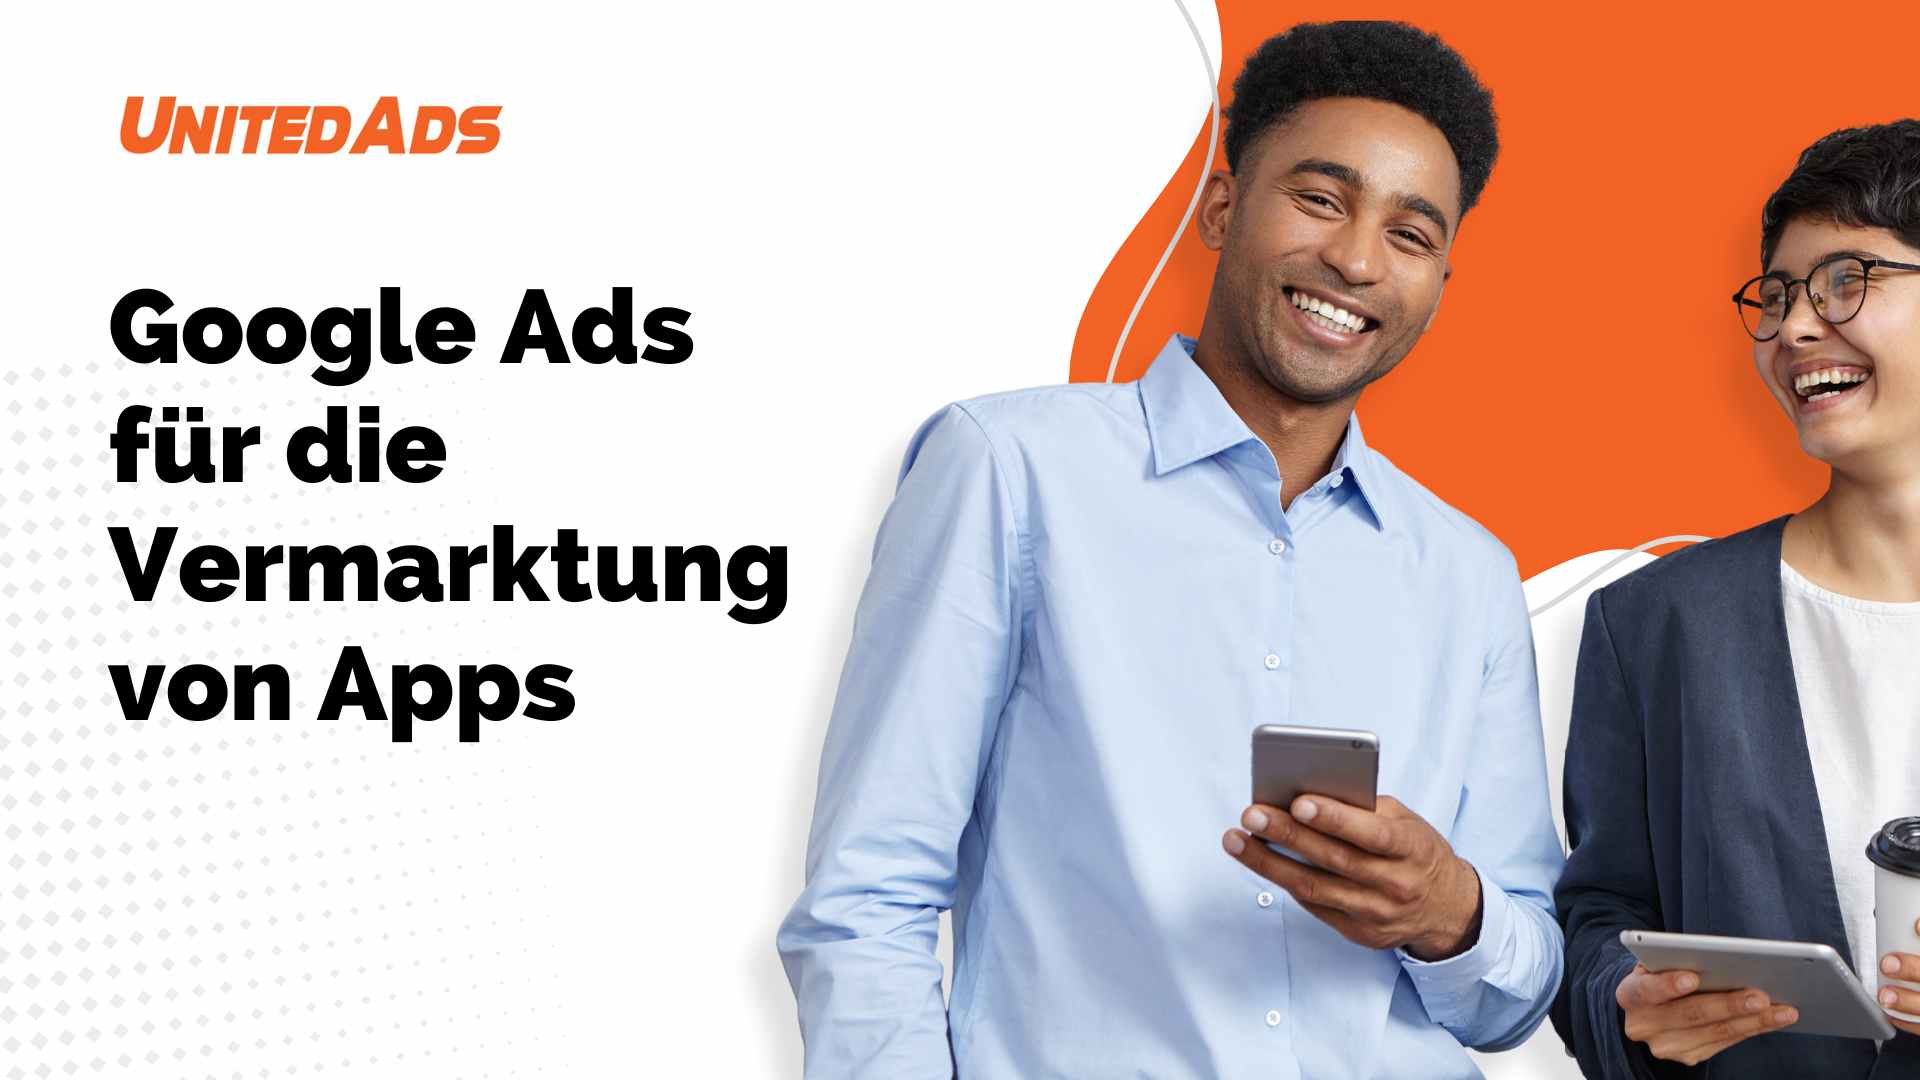 Google Ads fuer die Vermarktung von Apps